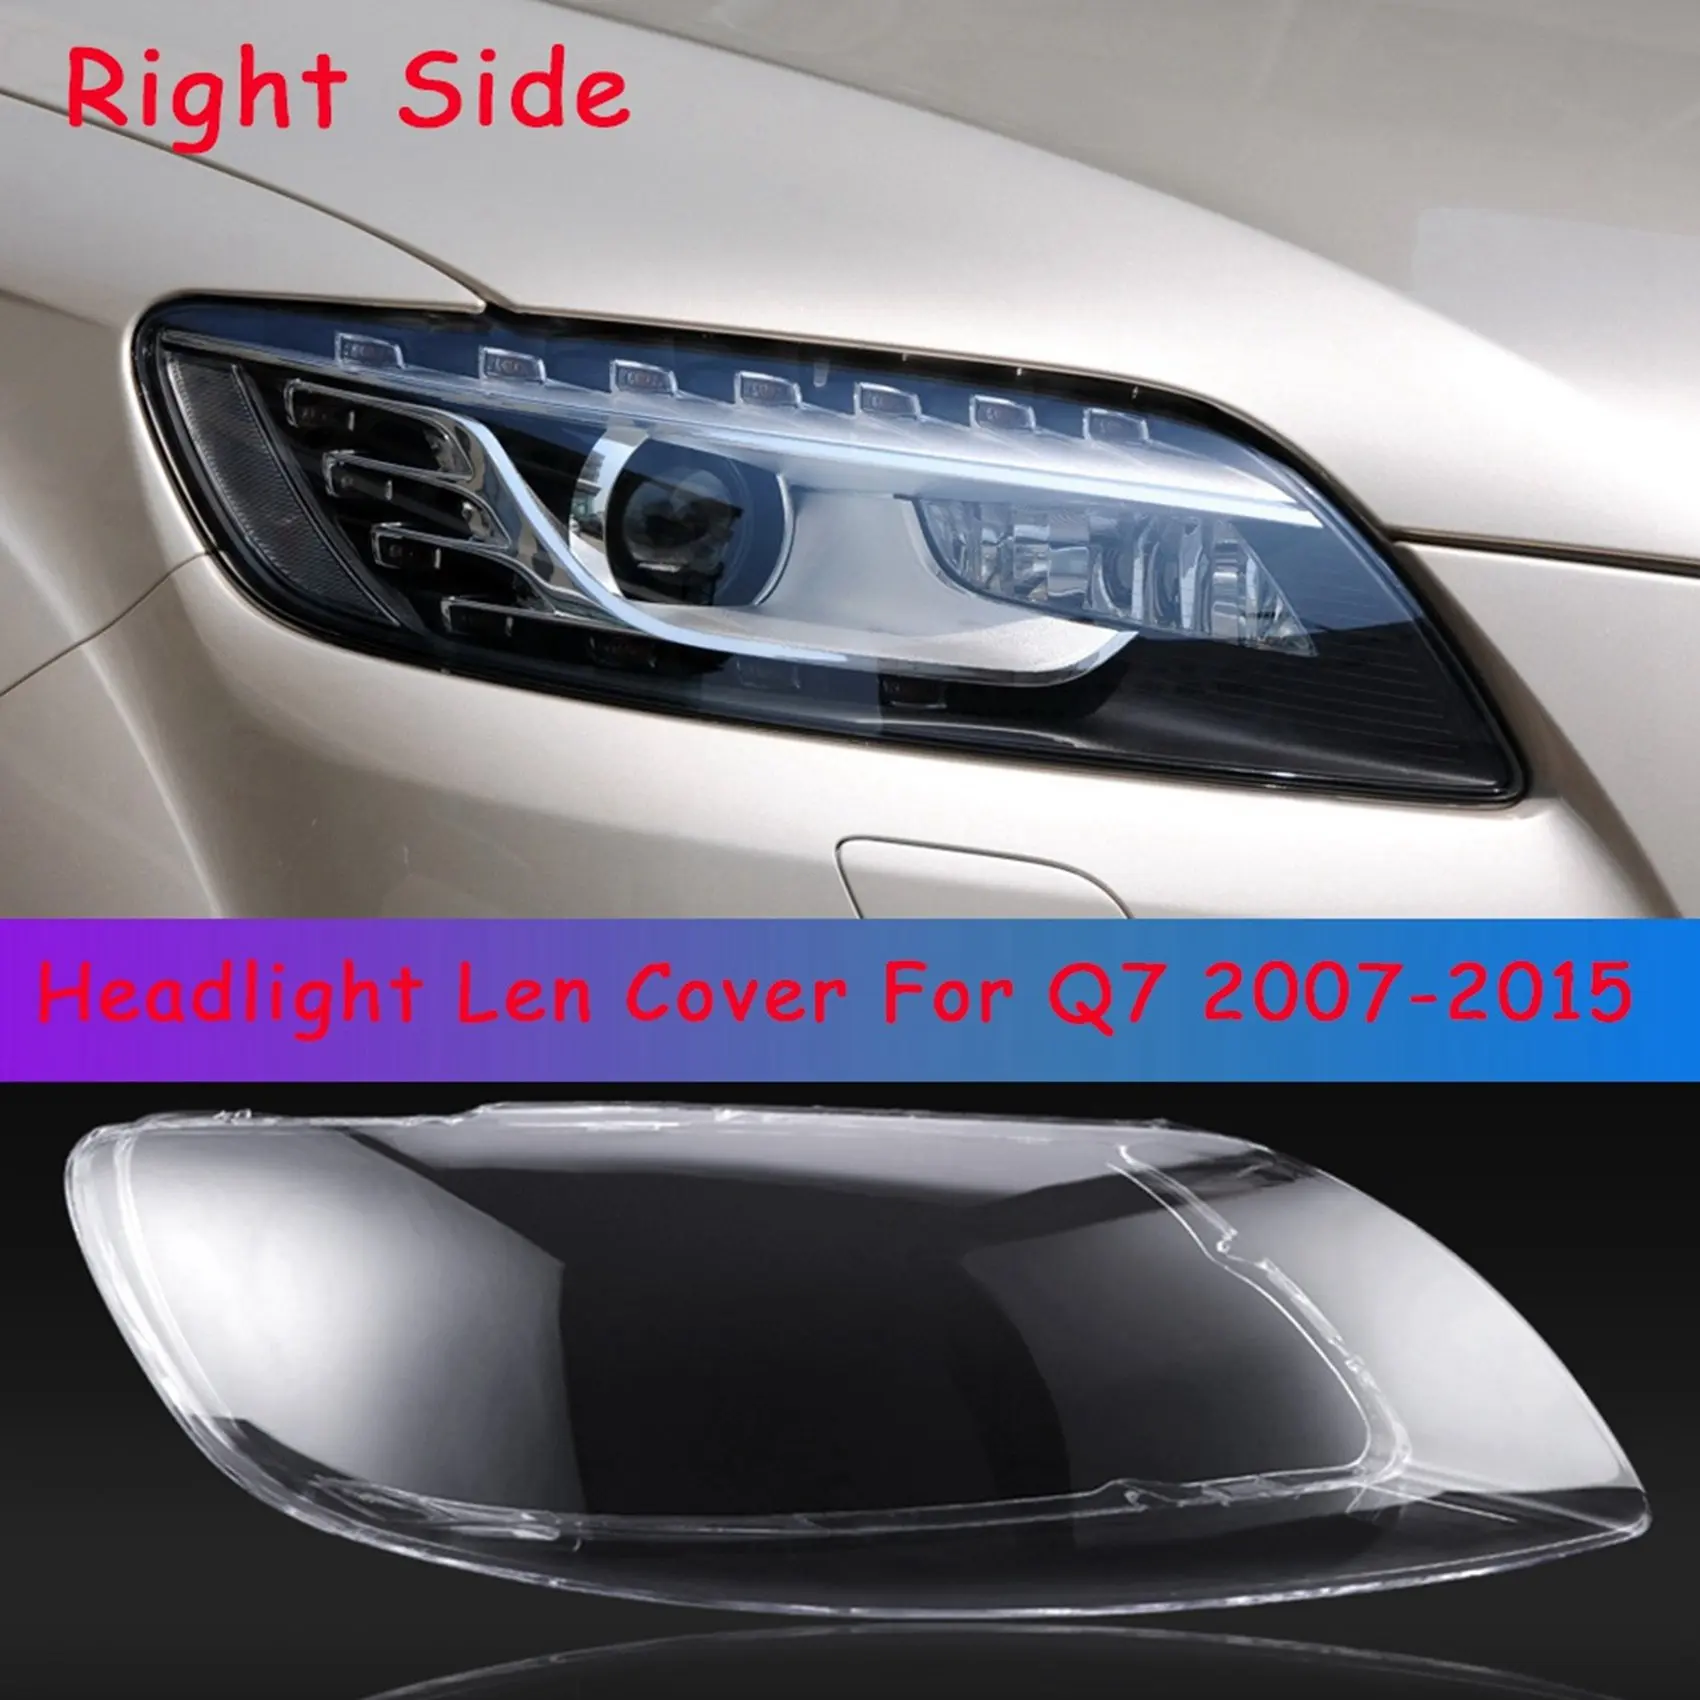 

Автомобильная задняя крышка для правой крышки телефона, задняя крышка для автомобиля, задняя крышка для Audi Q7 2007-2015